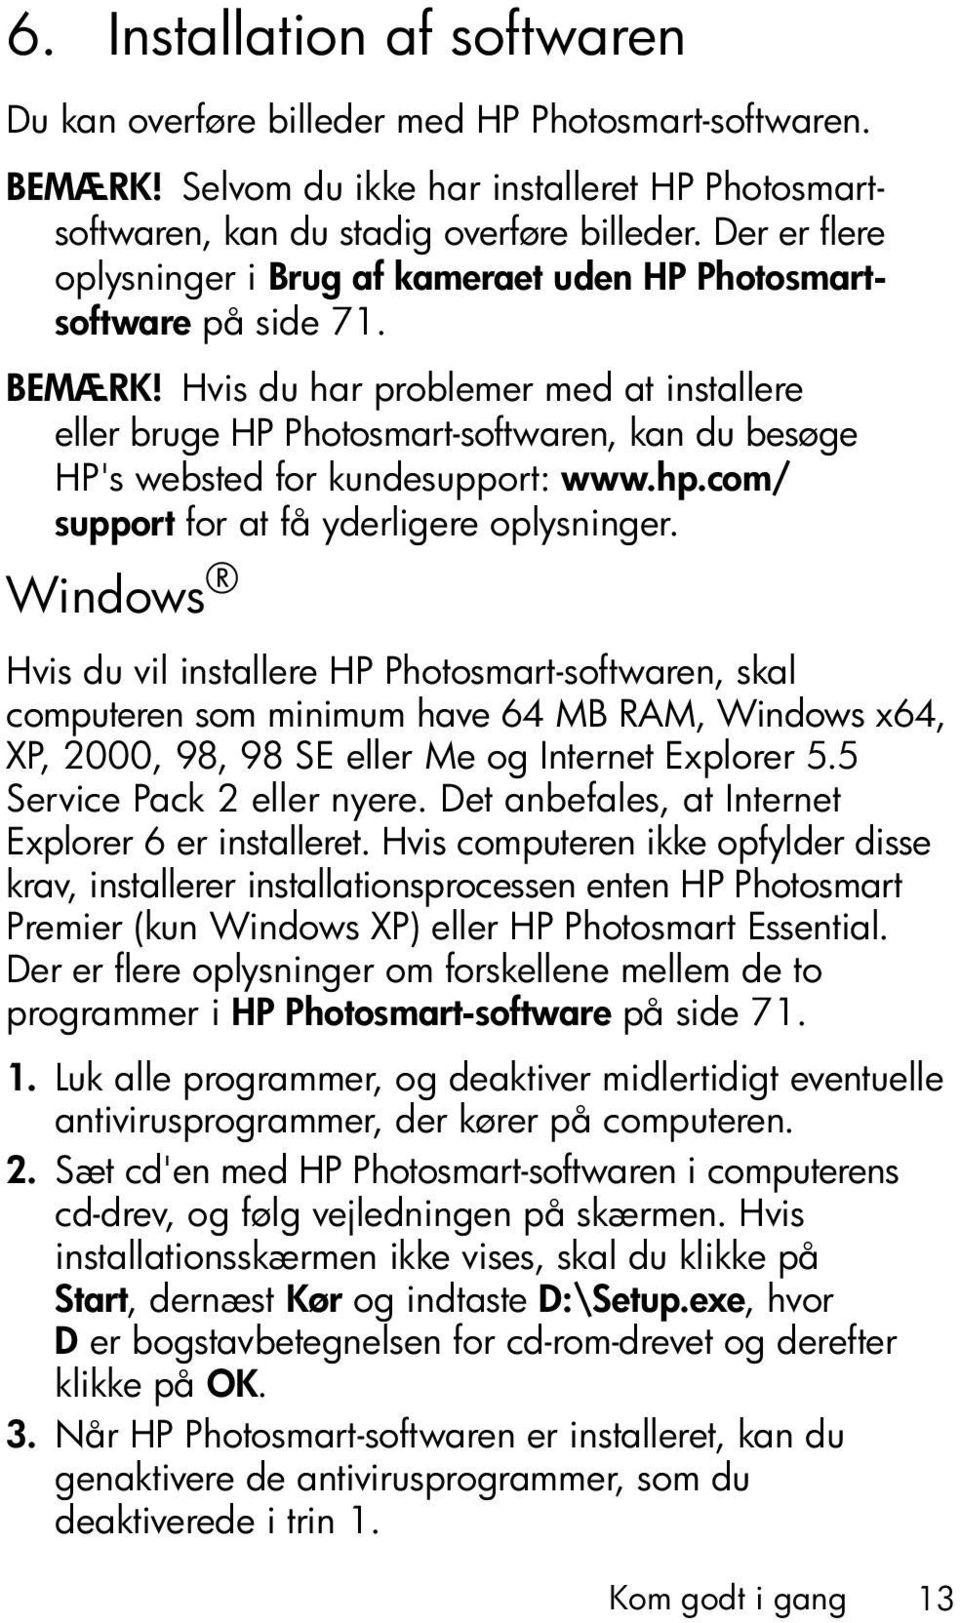 Hvis du har problemer med at installere eller bruge HP Photosmart-softwaren, kan du besøge HP's websted for kundesupport: www.hp.com/ support for at få yderligere oplysninger.